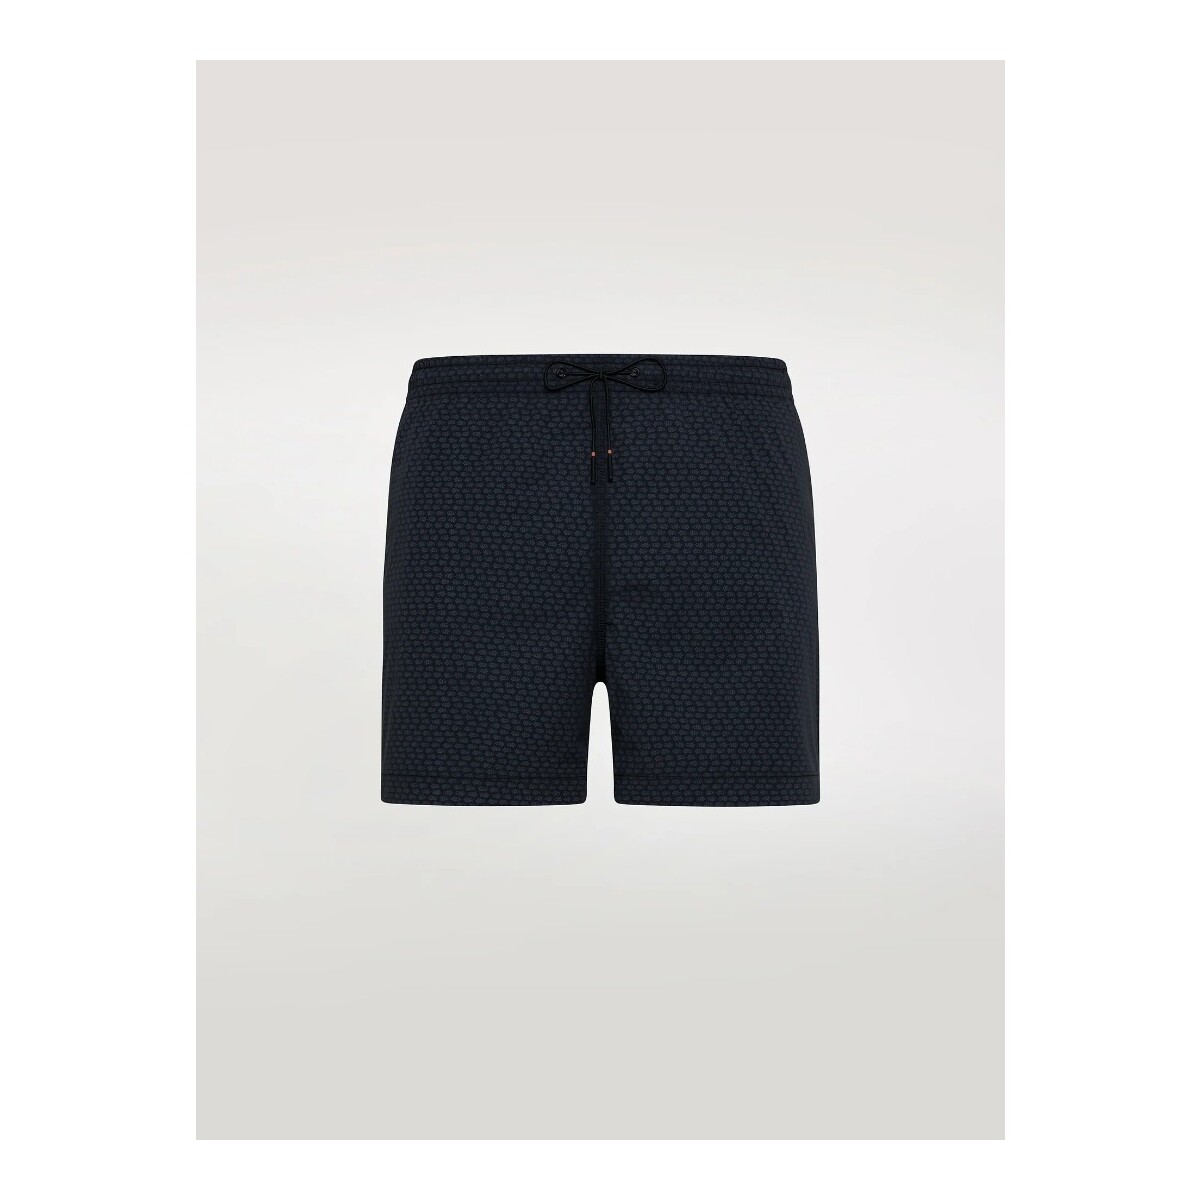 textil Hombre Shorts / Bermudas Rrd - Roberto Ricci Designs S24414 Azul